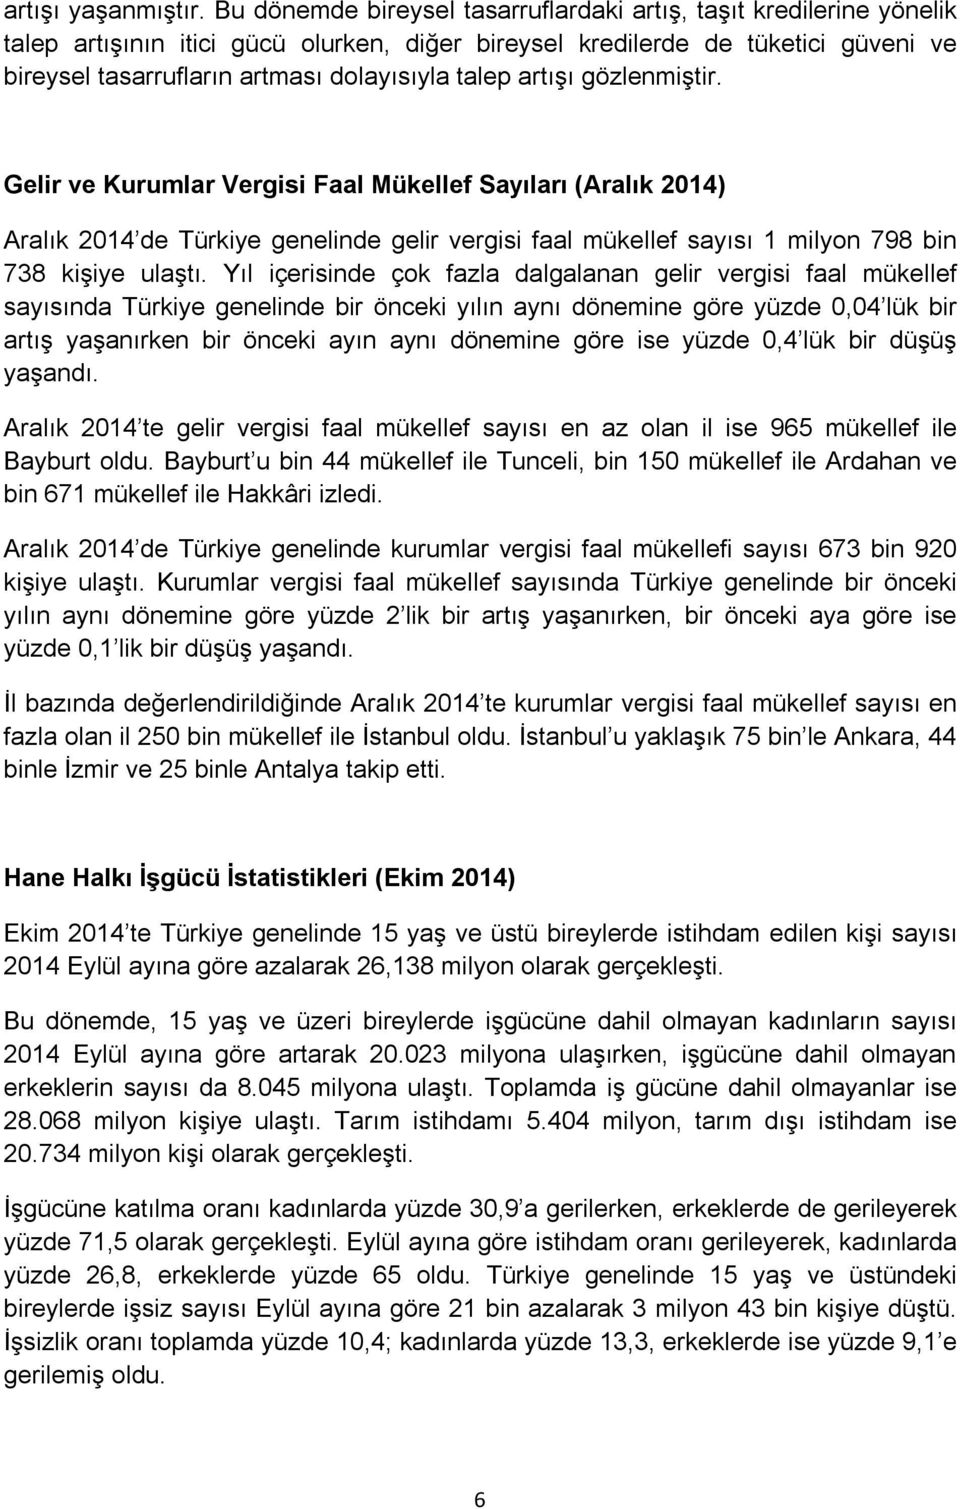 talep artışı gözlenmiştir. Gelir ve Kurumlar Vergisi Faal Mükellef Sayıları (Aralık 2014) Aralık 2014 de Türkiye genelinde gelir vergisi faal mükellef sayısı 1 milyon 798 bin 738 kişiye ulaştı.